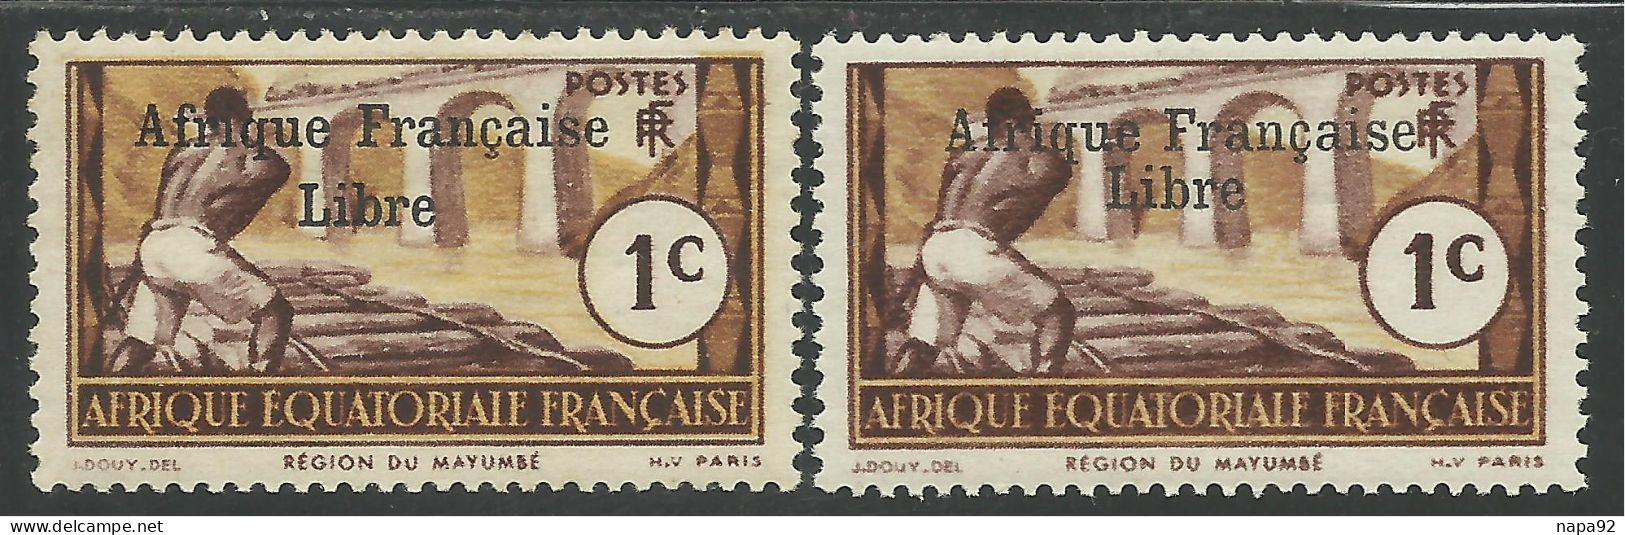 AFRIQUE EQUATORIALE FRANCAISE - AEF - A.E.F. - 1941 - YT 156** - 2ème TIRAGE - Unused Stamps